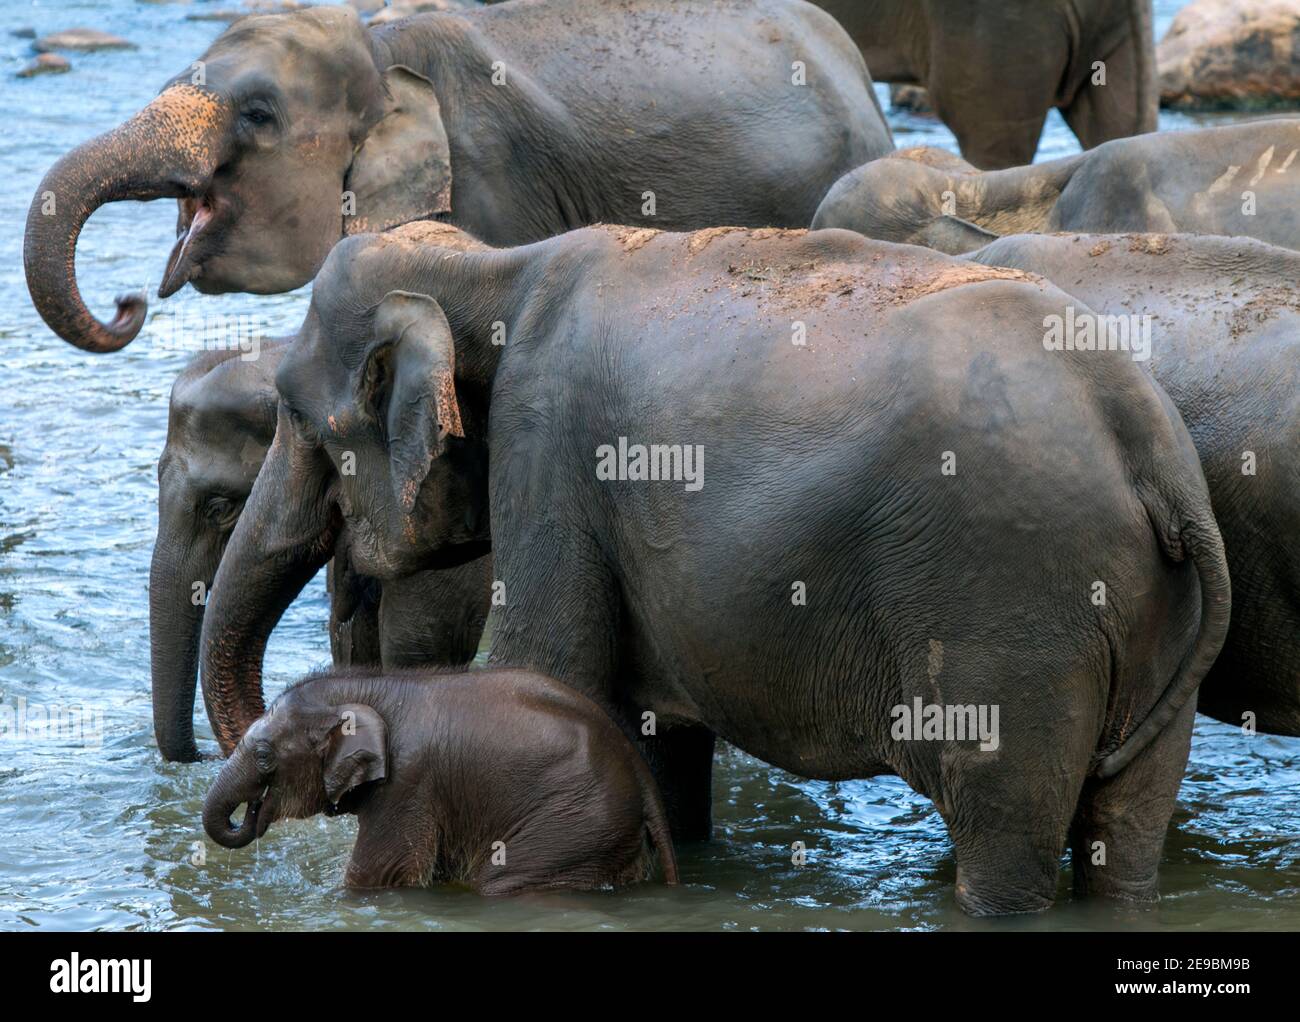 Elephants from the Pinnawala Elephant Orphanage bathe in the Maha Oya River in central Sri Lanka. Stock Photo